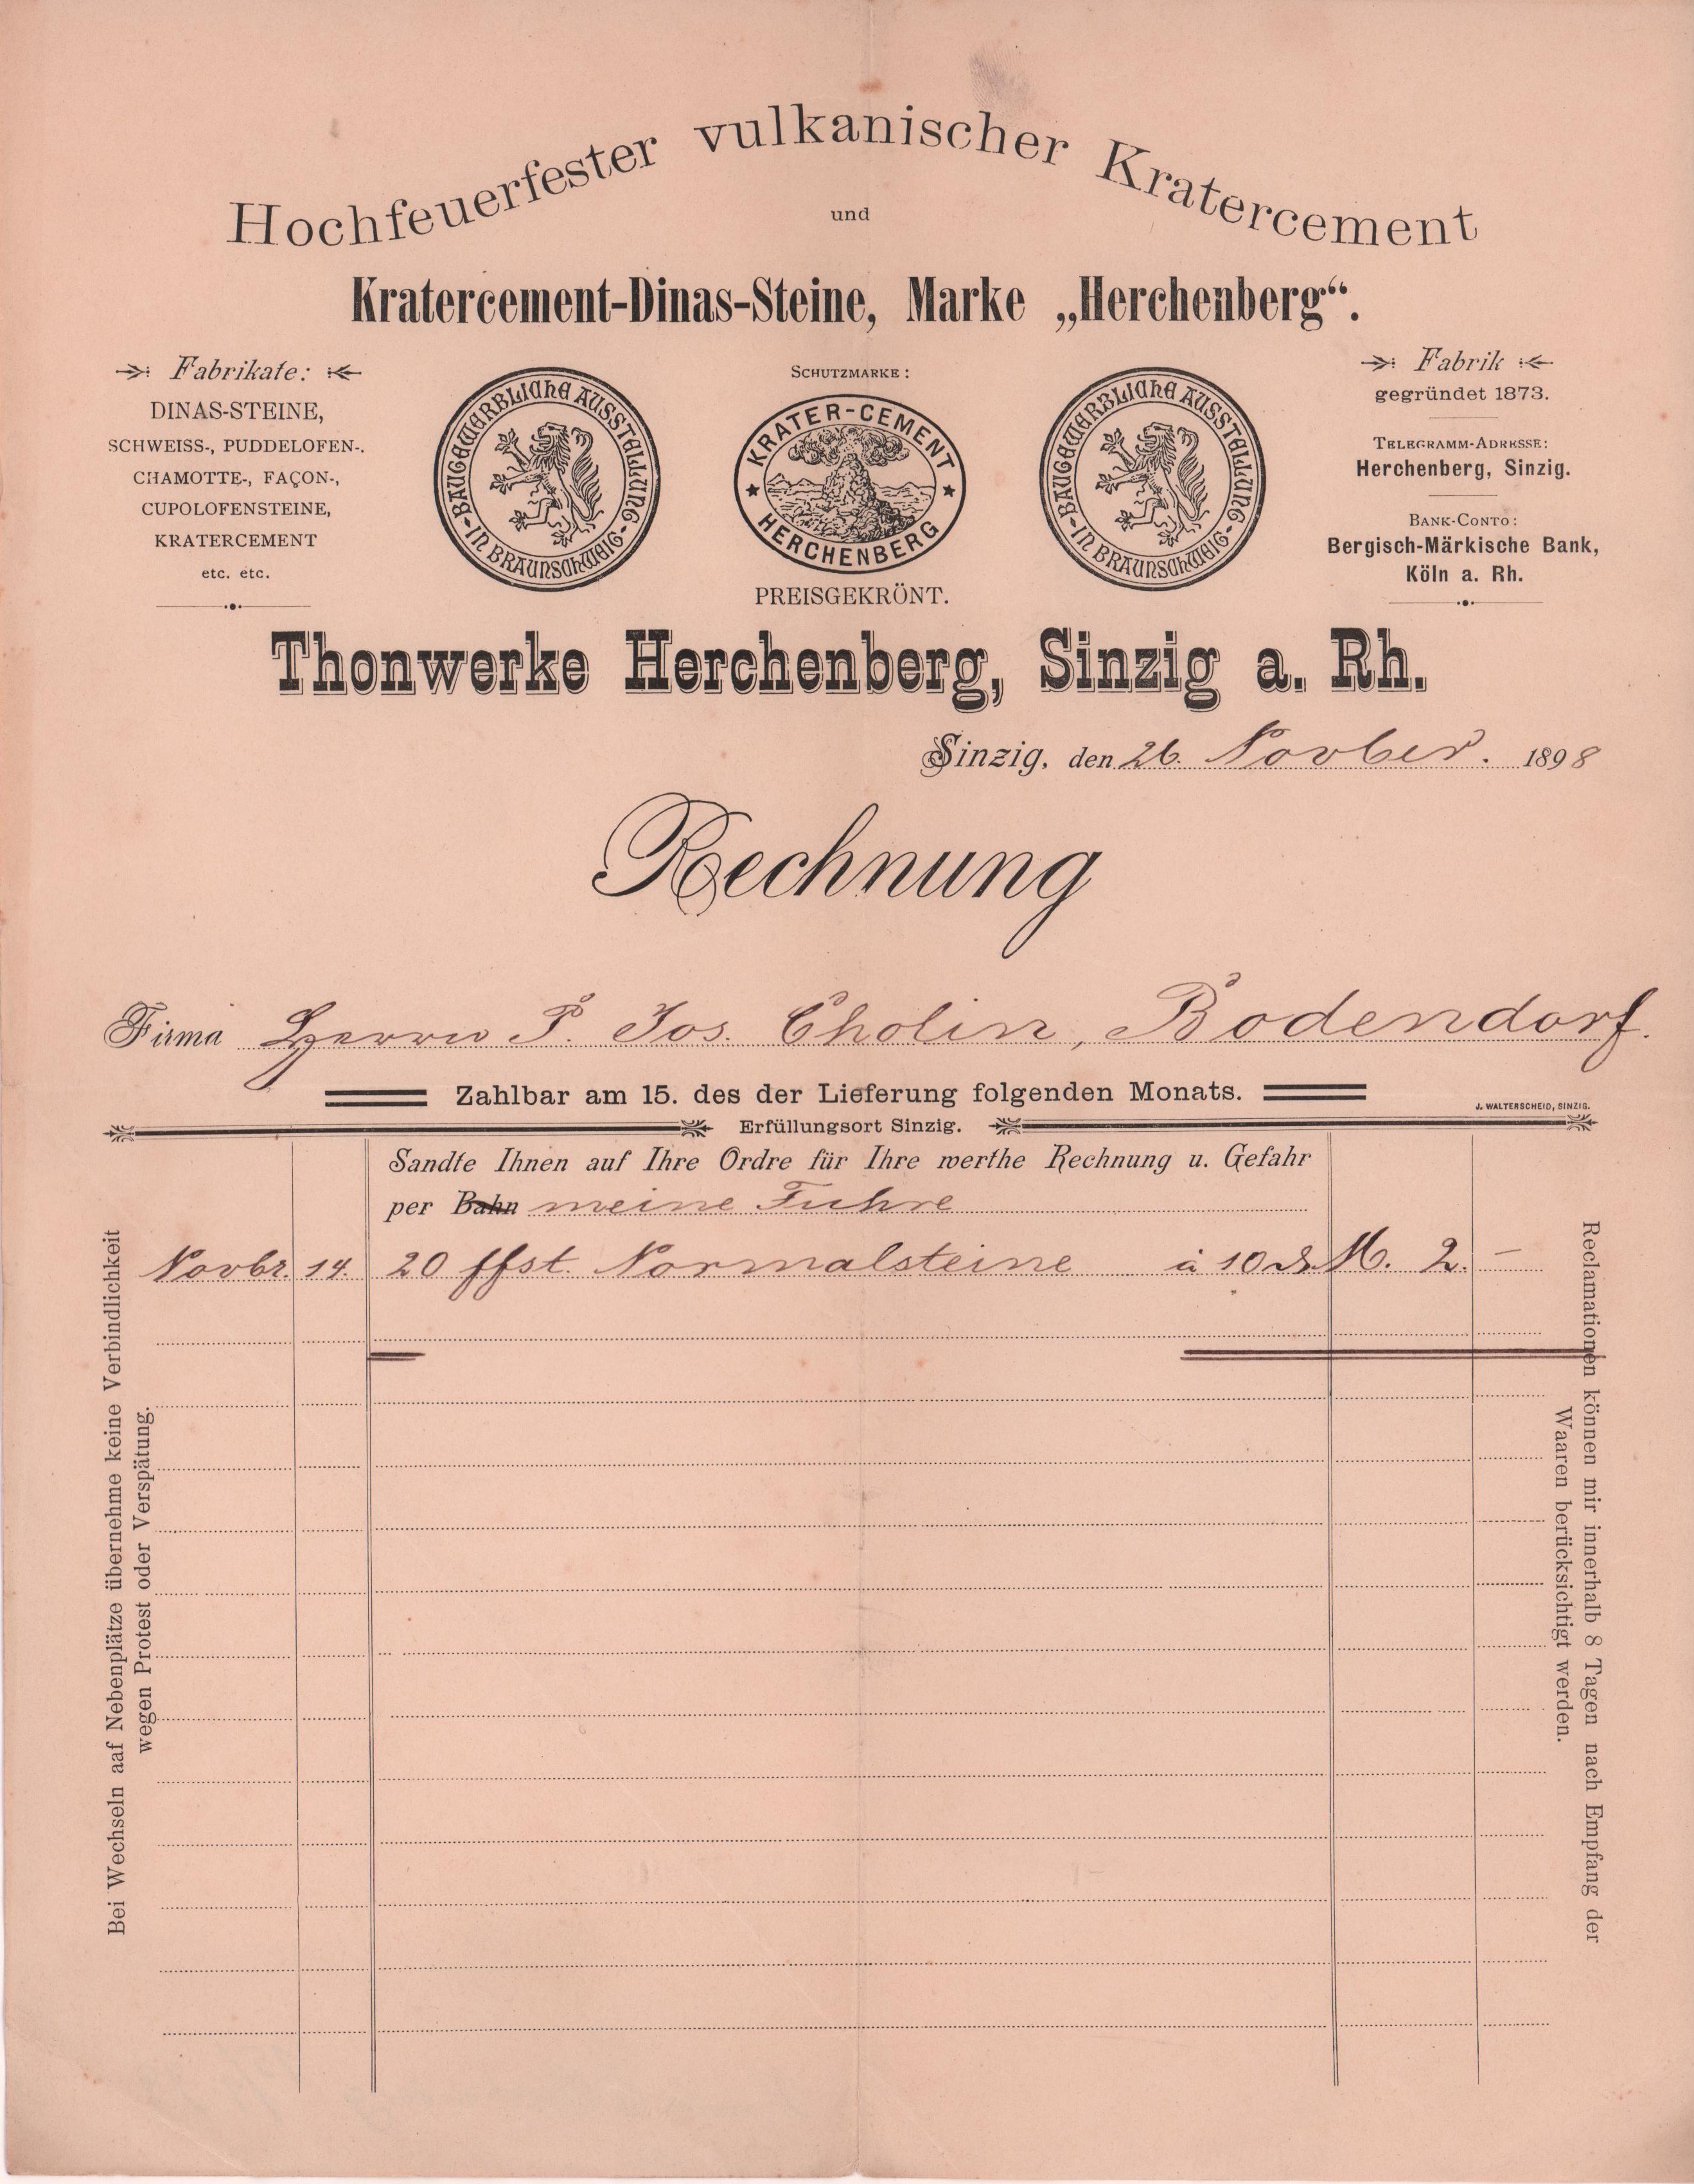 Rechnung der Thonwerke Herschenberg, Sinzig vom 26. November 1898 an Gastwirtschaft Cholin in Bodendorf/Ahr (Heimatarchiv Bad Bodendorf CC BY-NC-SA)